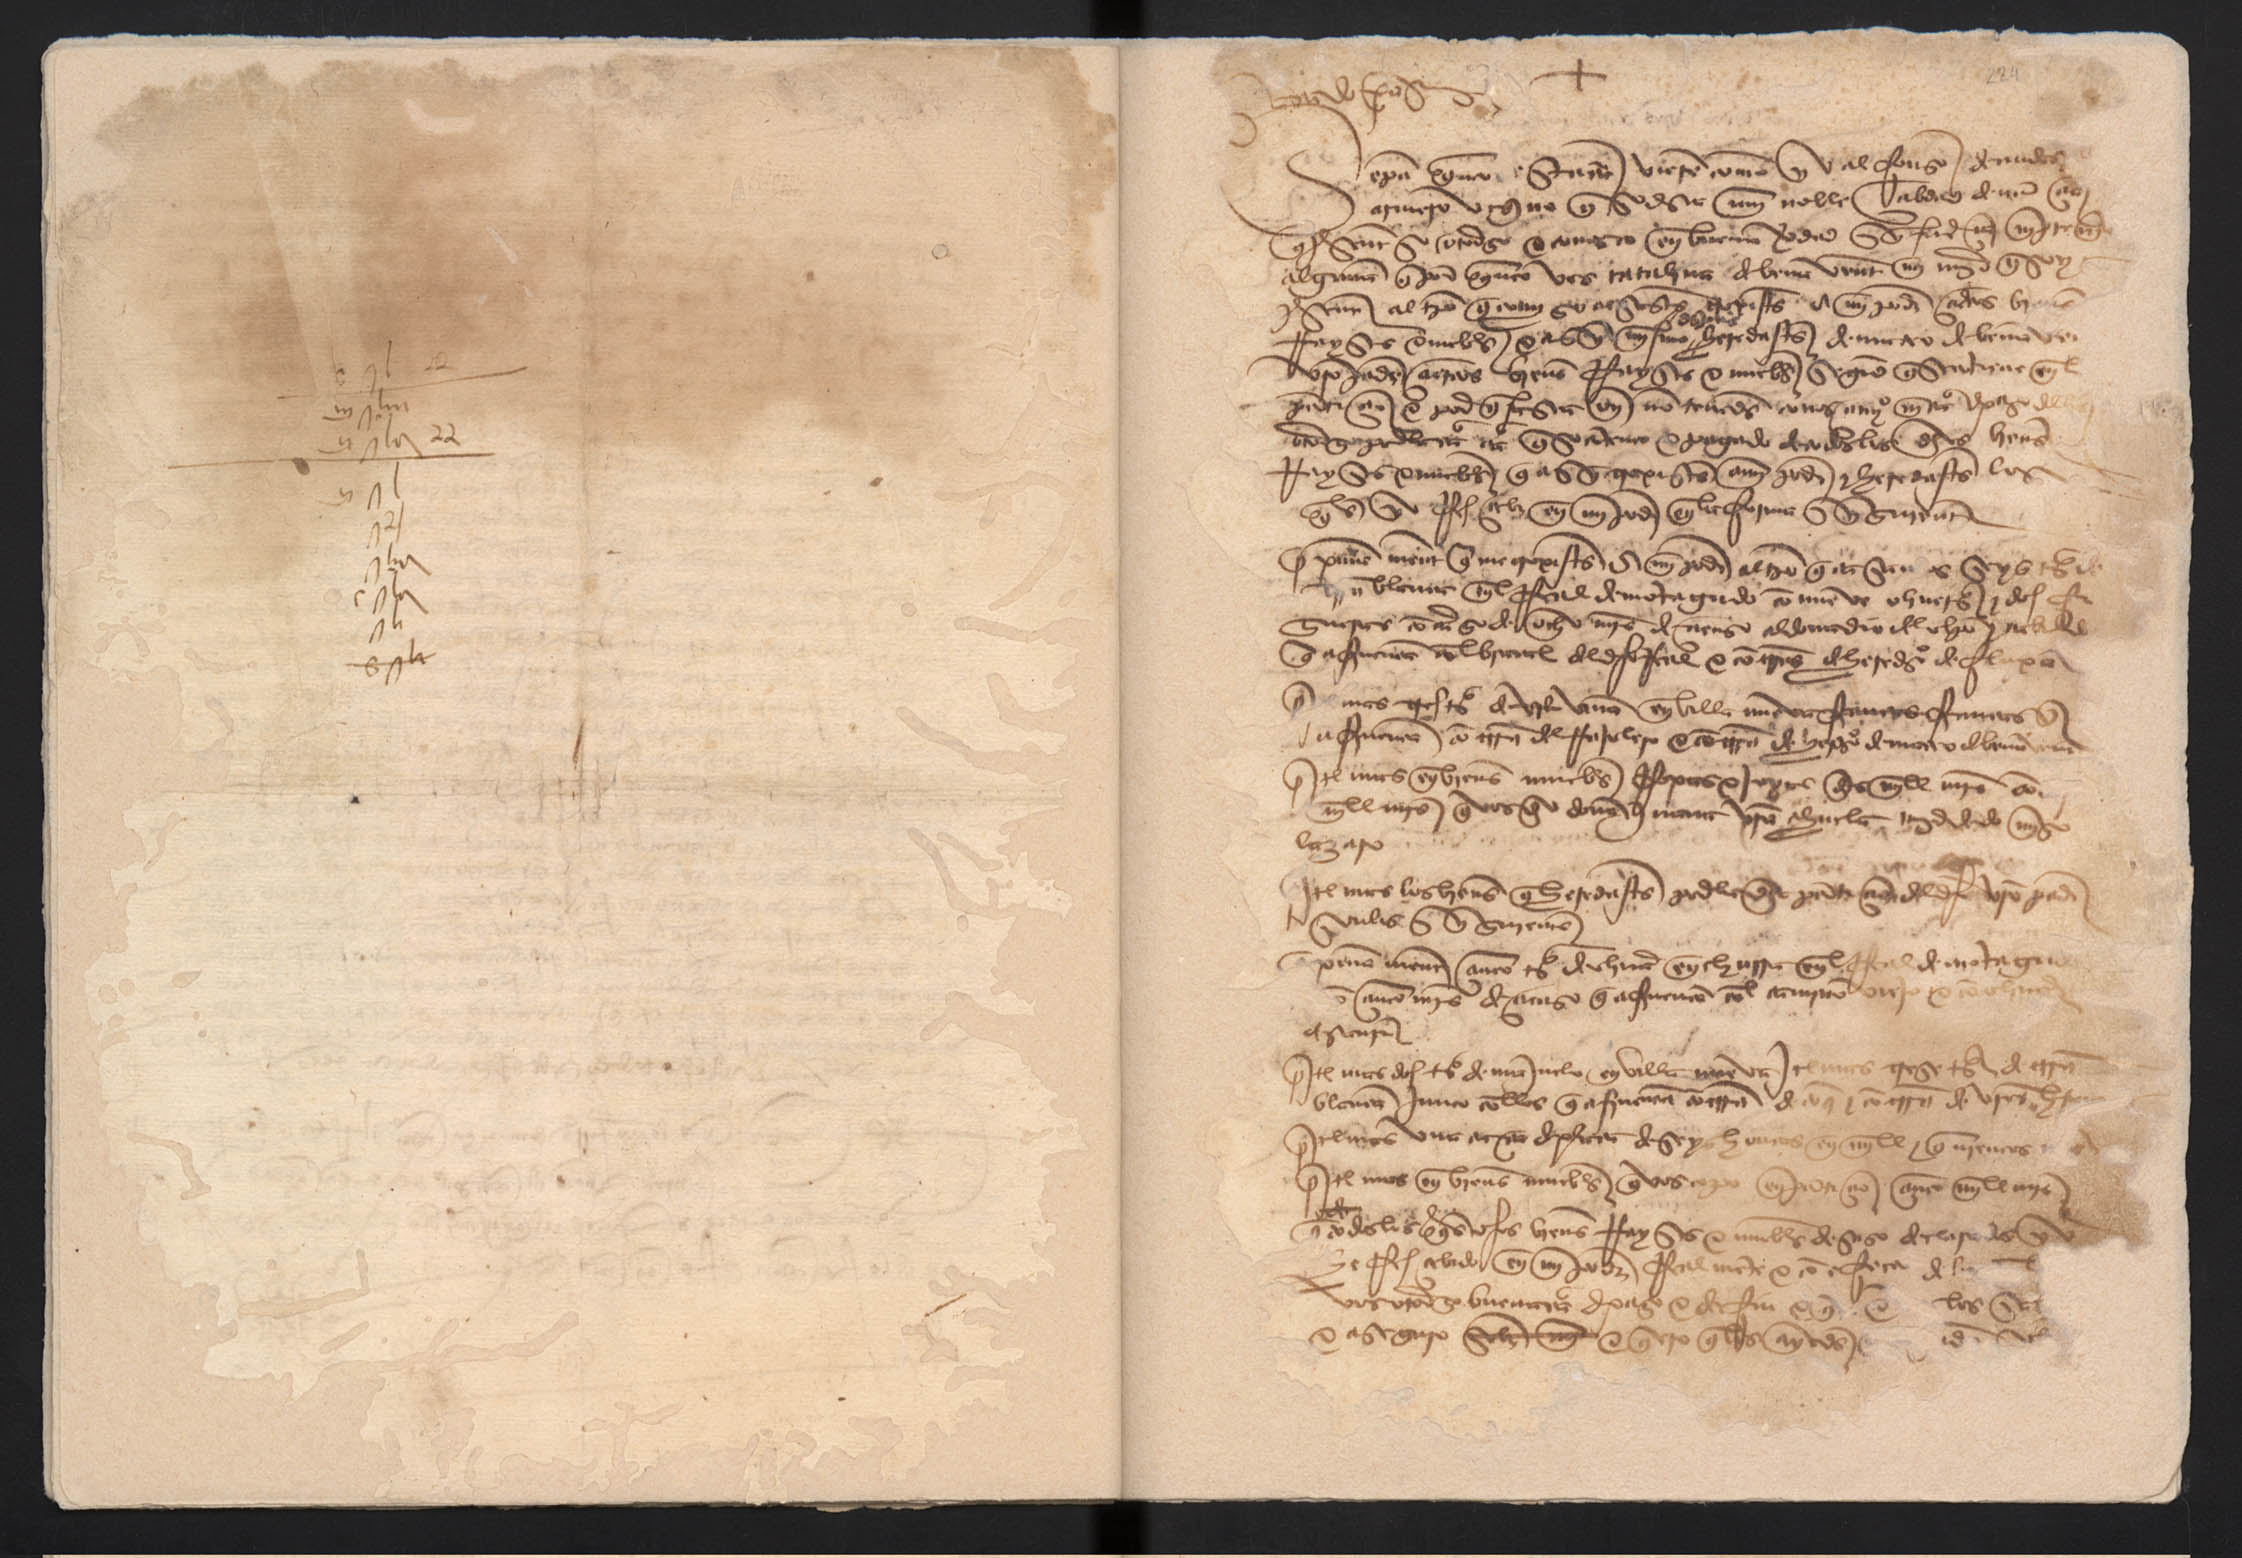 Carta de pago y finiquito de Alfonso de Andosilla a su mujer Catalina de Andosilla, reconociendo haber recibido ciertos bienes de su parte.